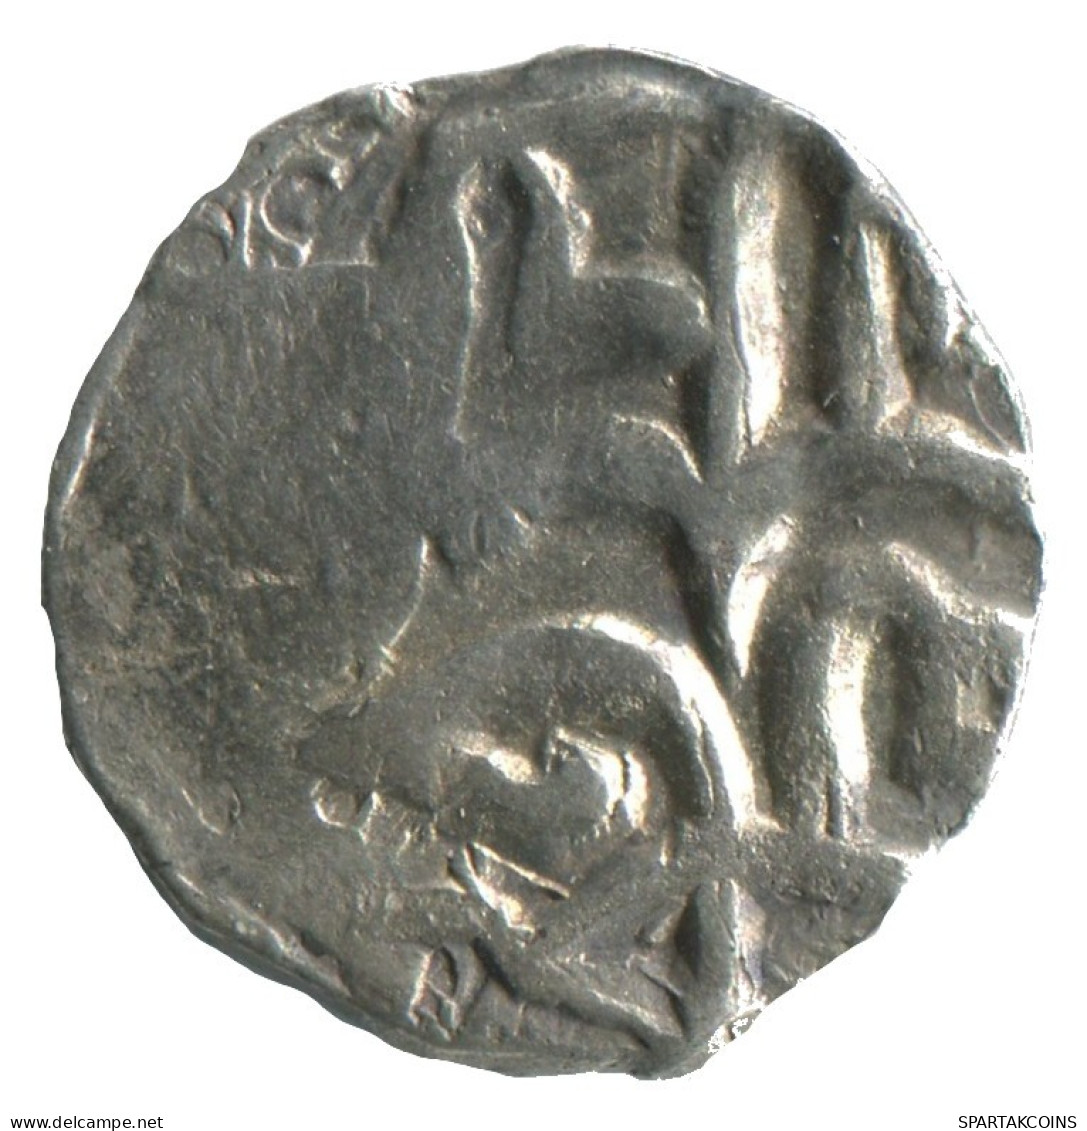 GOLDEN HORDE Silver Dirham Medieval Islamic Coin 1.3g/16mm #NNN2017.8.D.A - Islamitisch